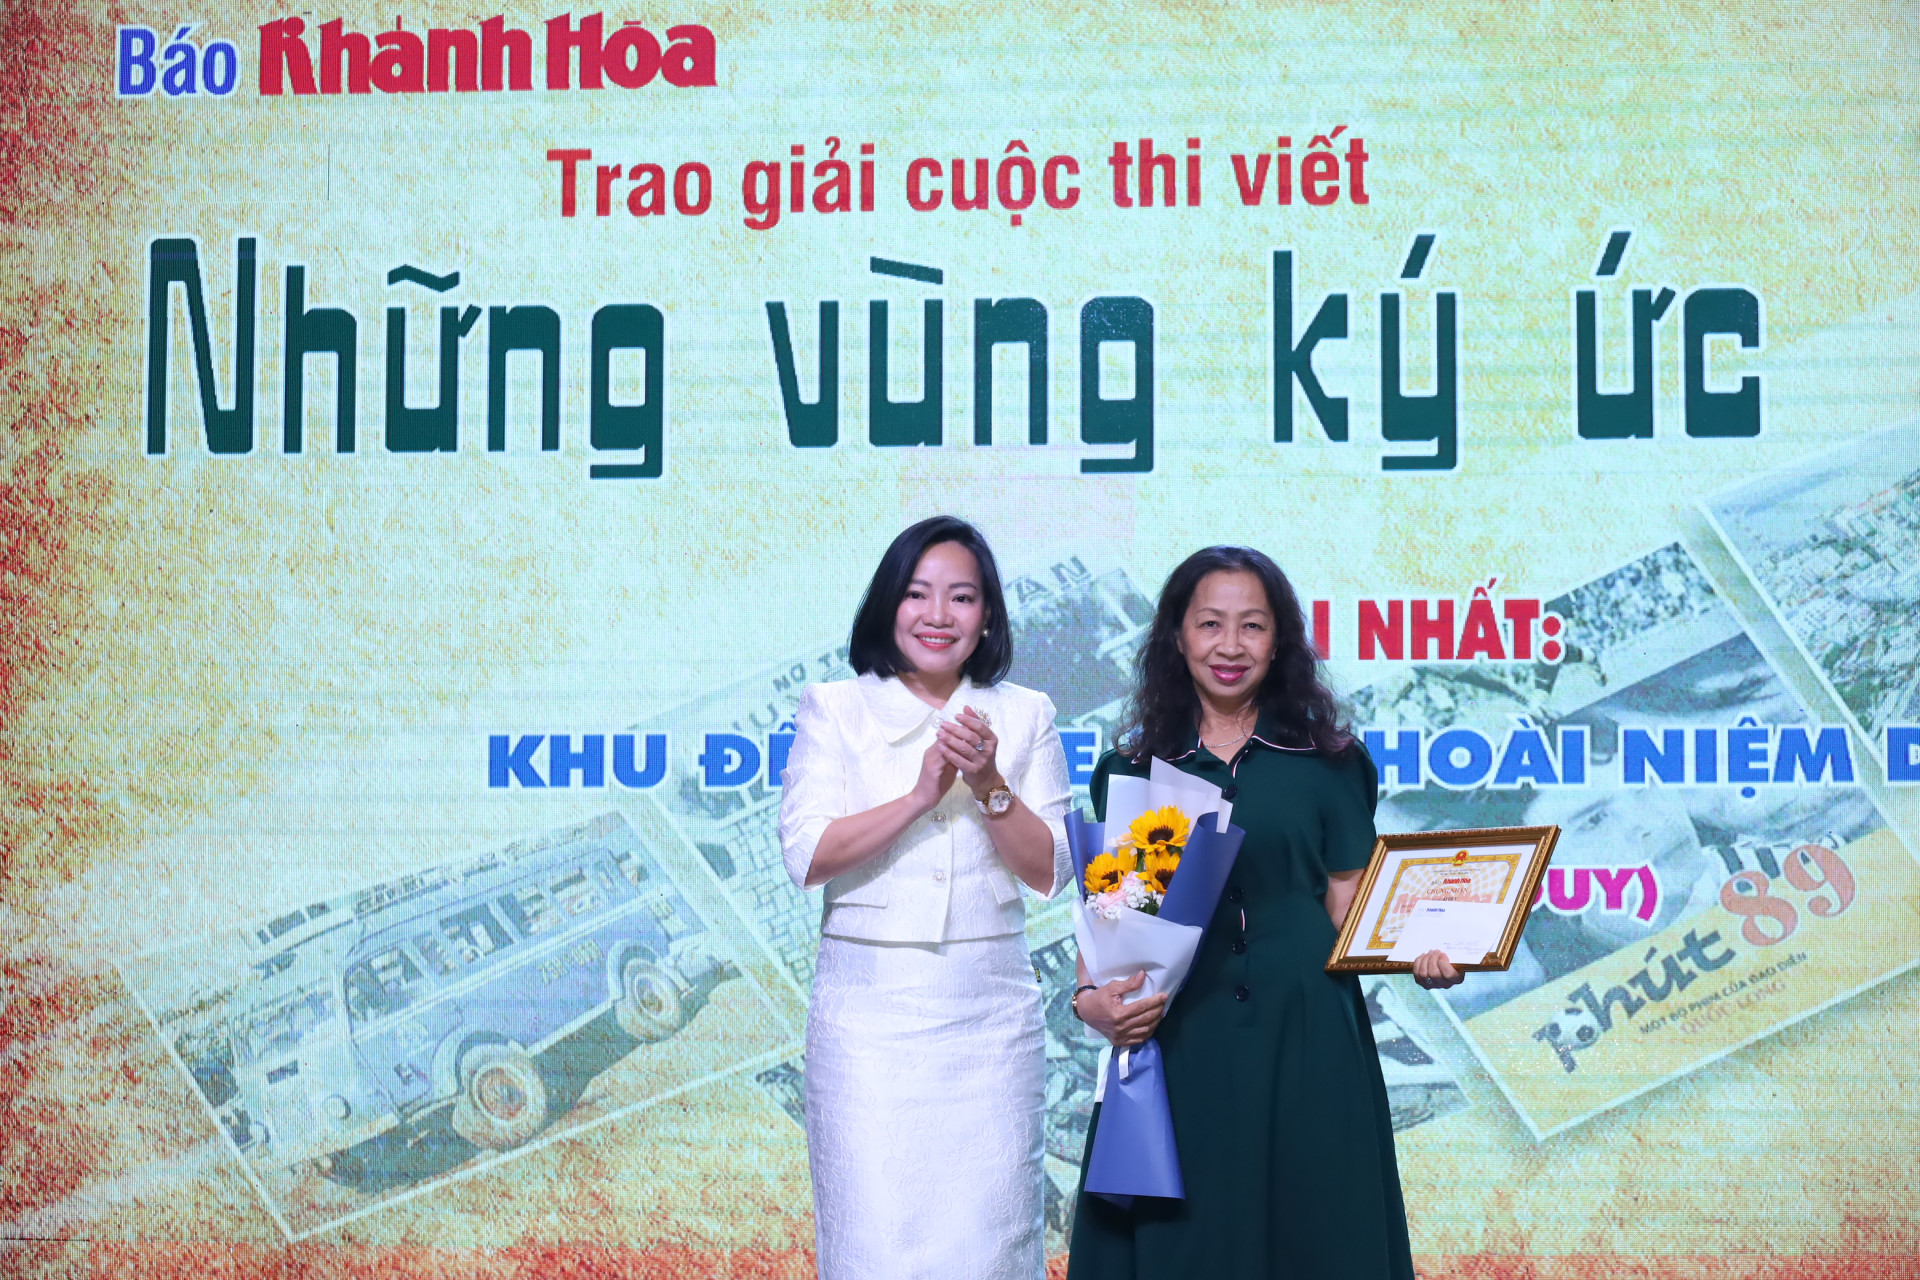 Đồng chí Thái Thị Lệ Hằng trao giải cho tác giả có tác phẩm đạt giải Nhất cuộc thi viết “Những vùng ký ức”.